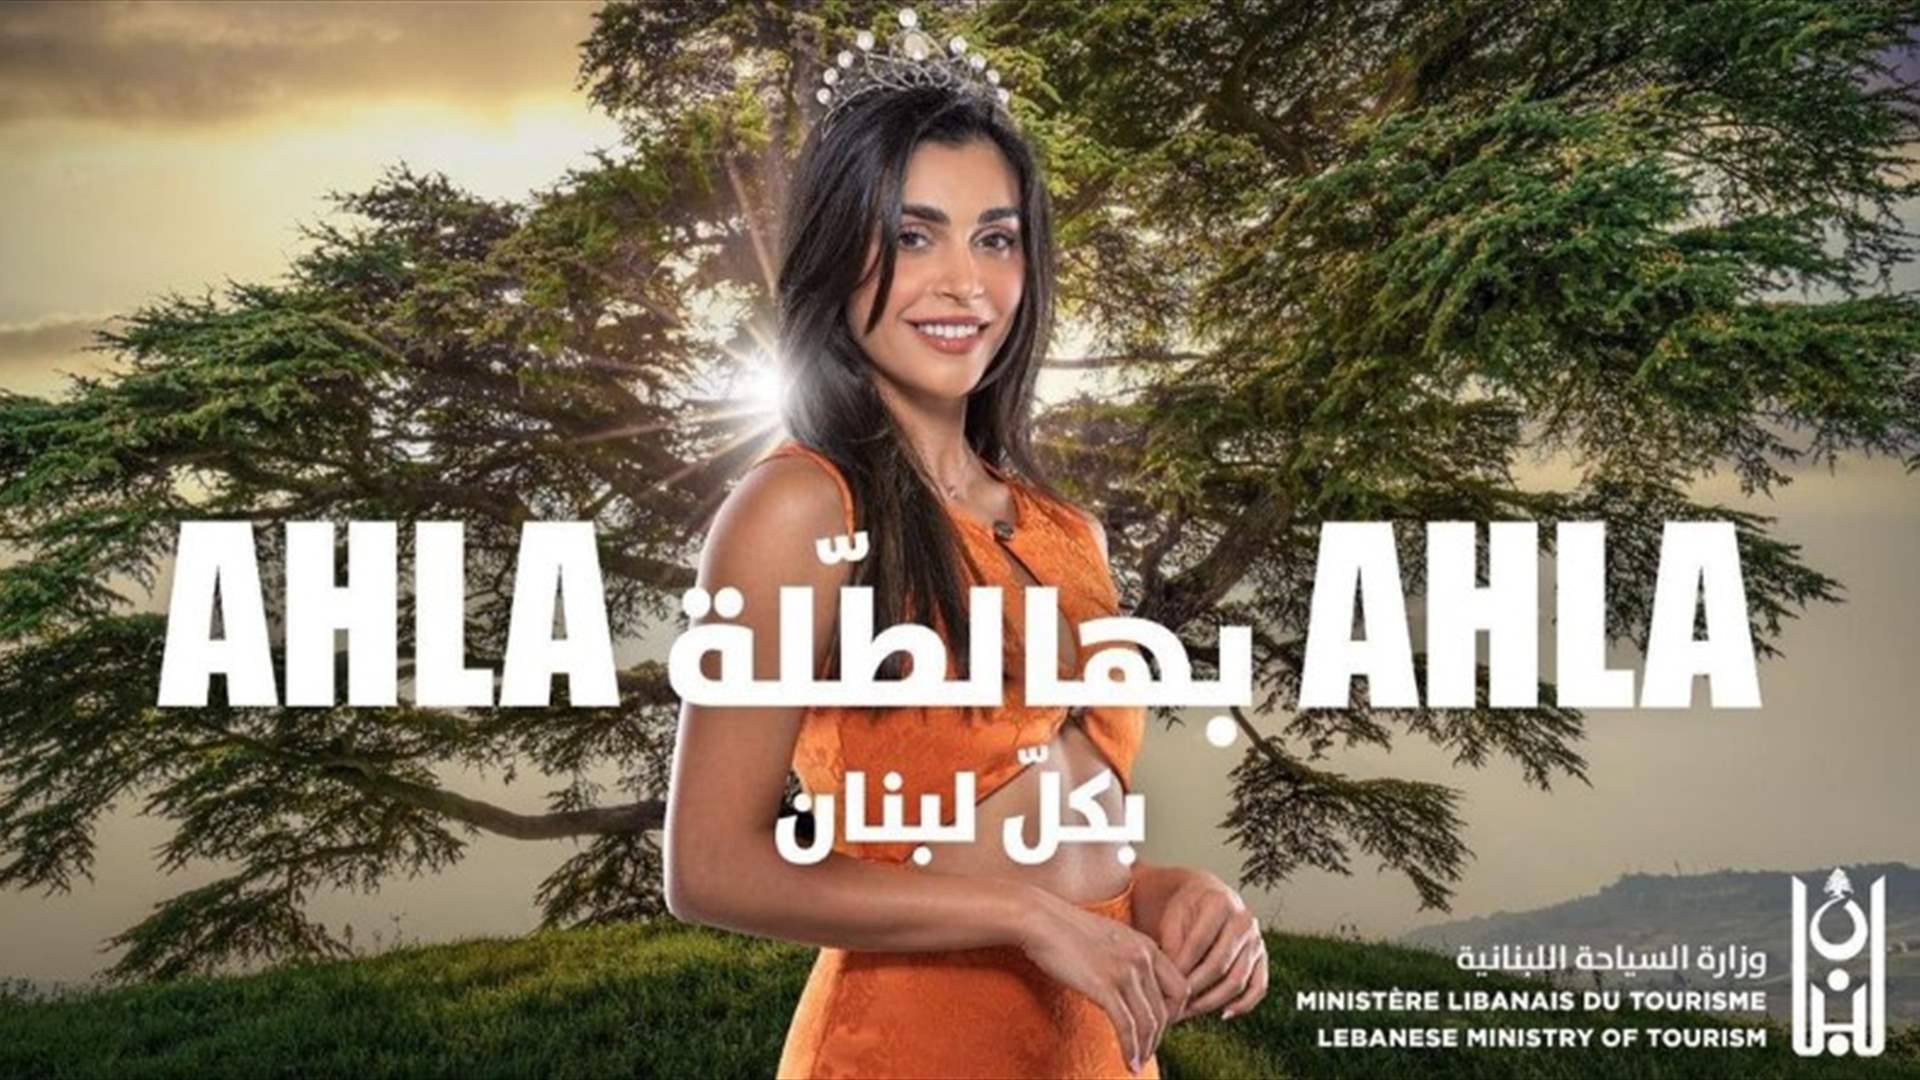 ملكة جمال لبنان ياسمينة زيتون تصرخ فور وصولها الى مطار بيروت... &quot;أهلا بهالطلّة أهلا&quot; 